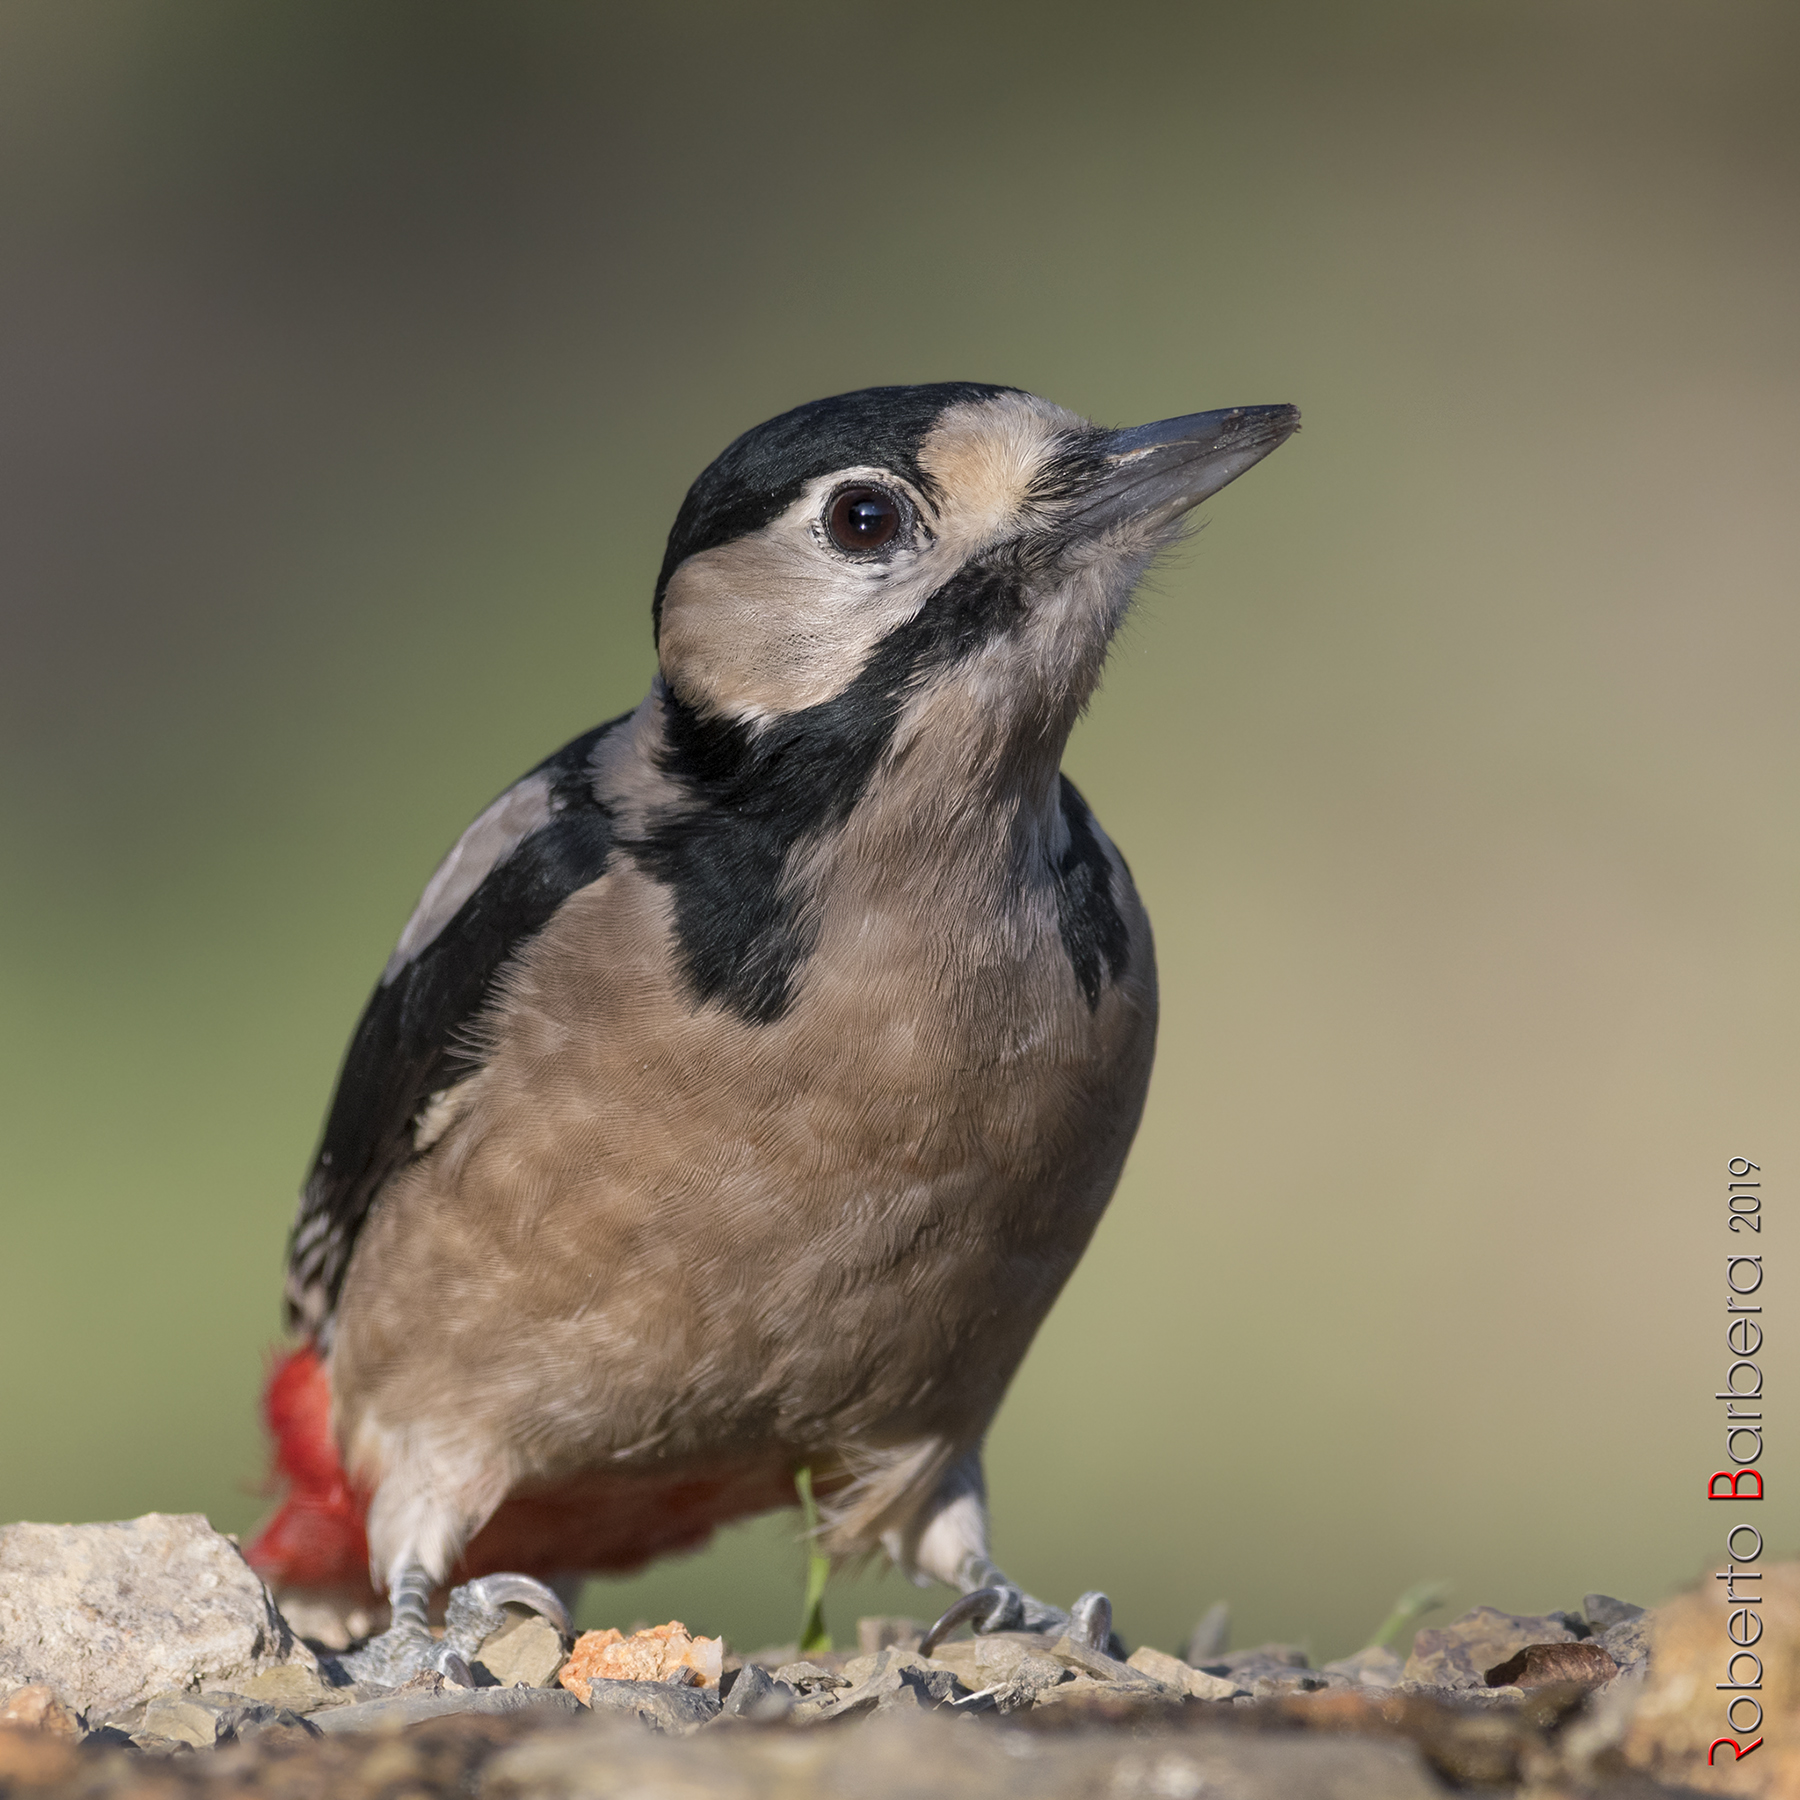 Female major red woodpecker...